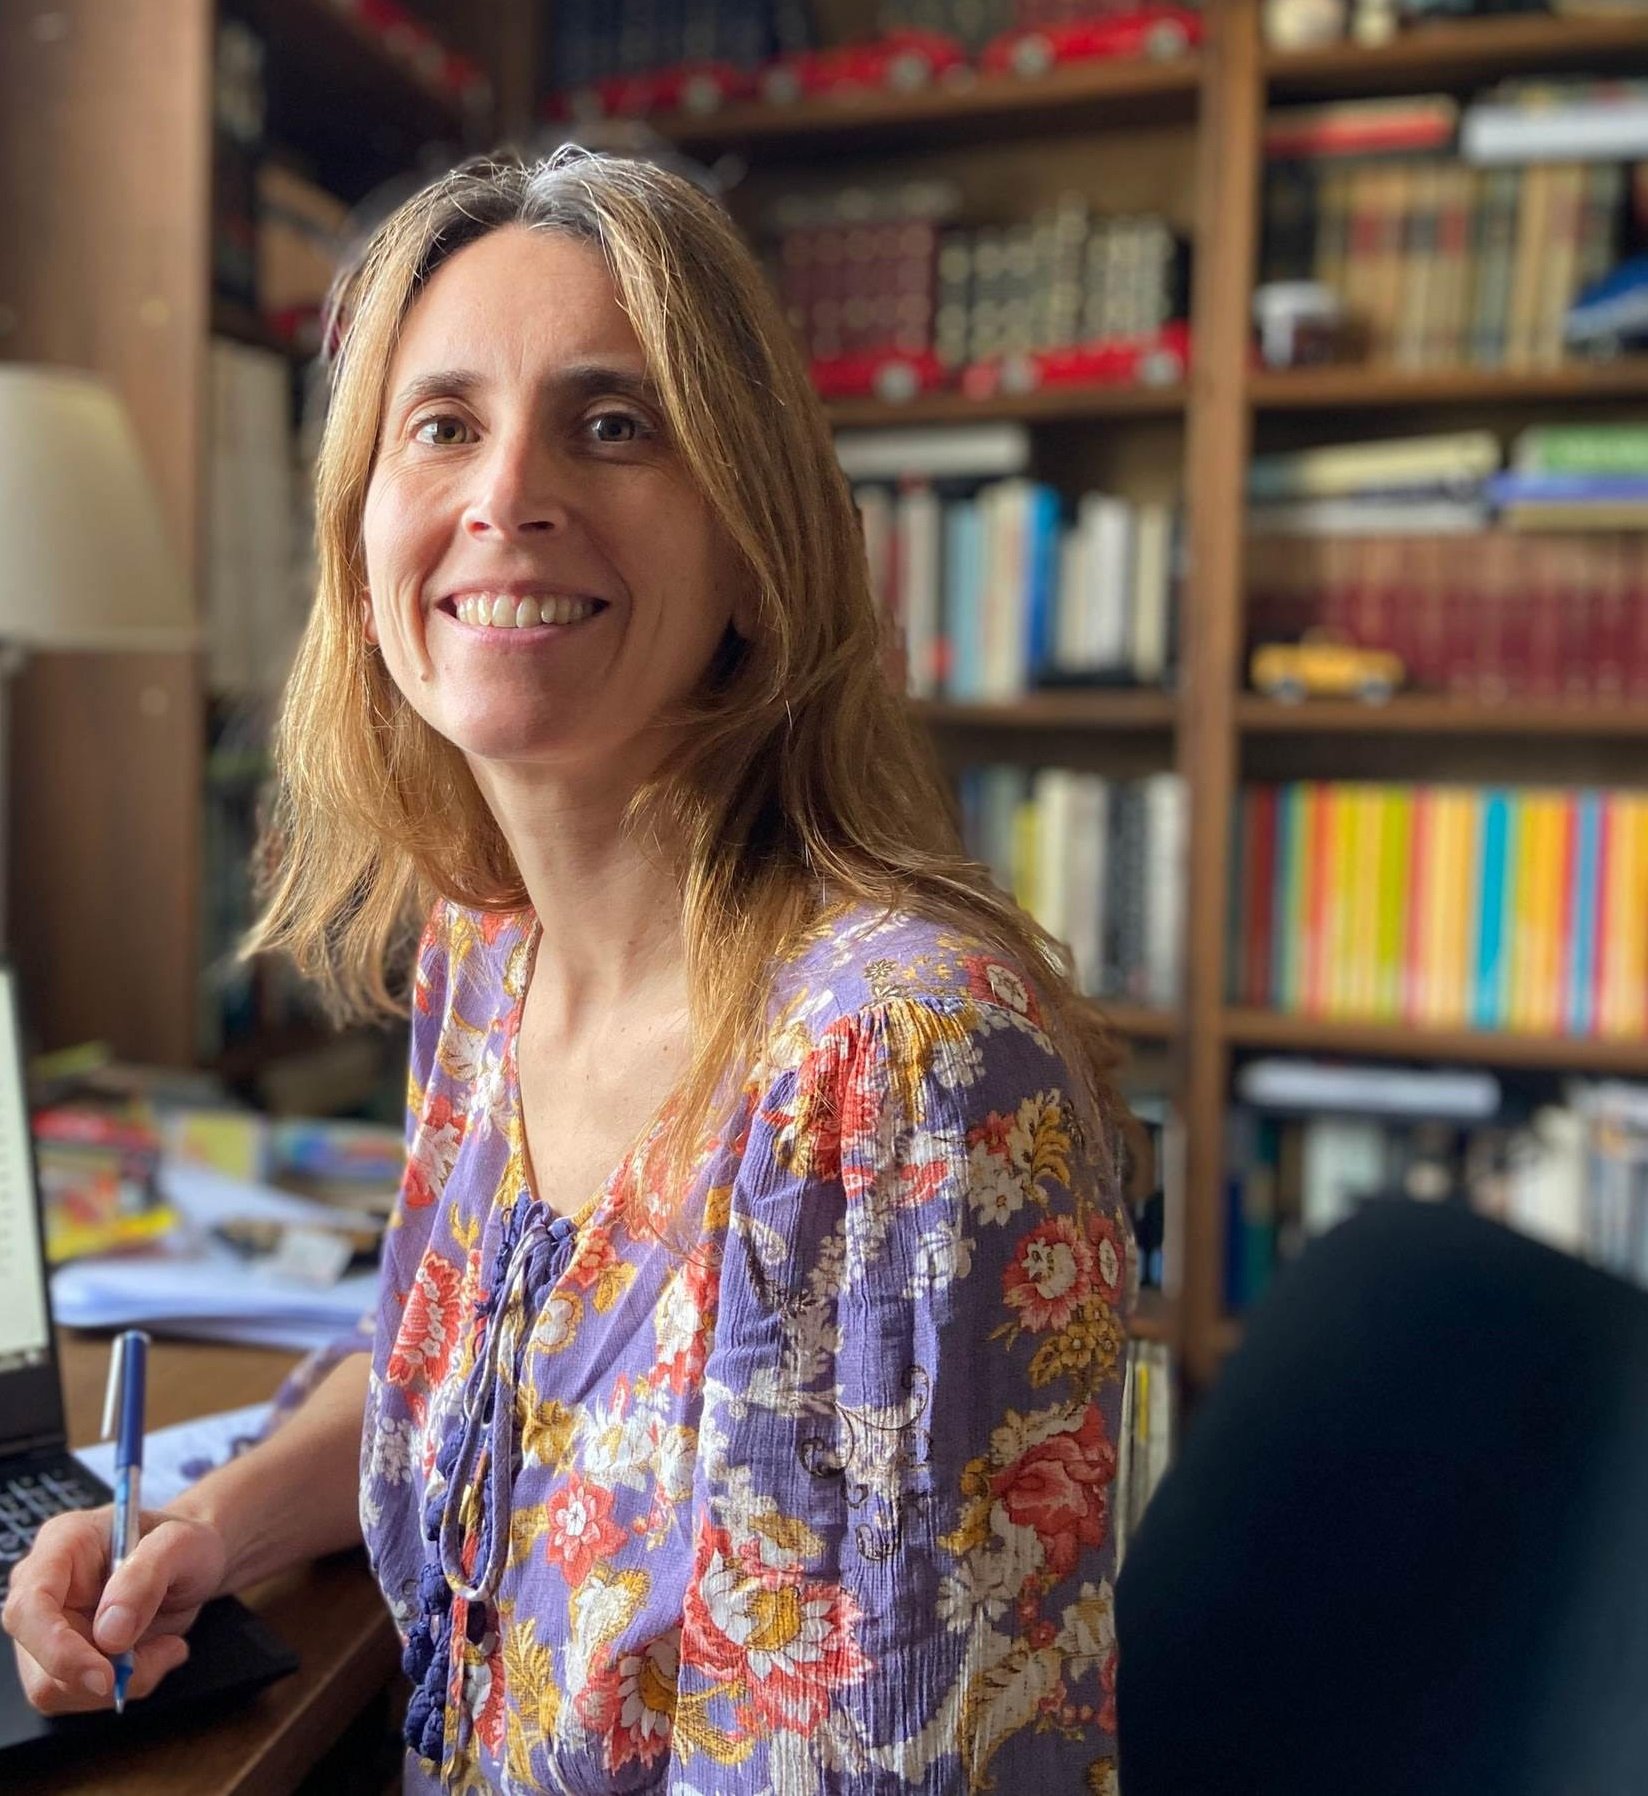 Clara Prats, biòloga: "Per eliminar la Covid, cal canviar l'estil de vida"